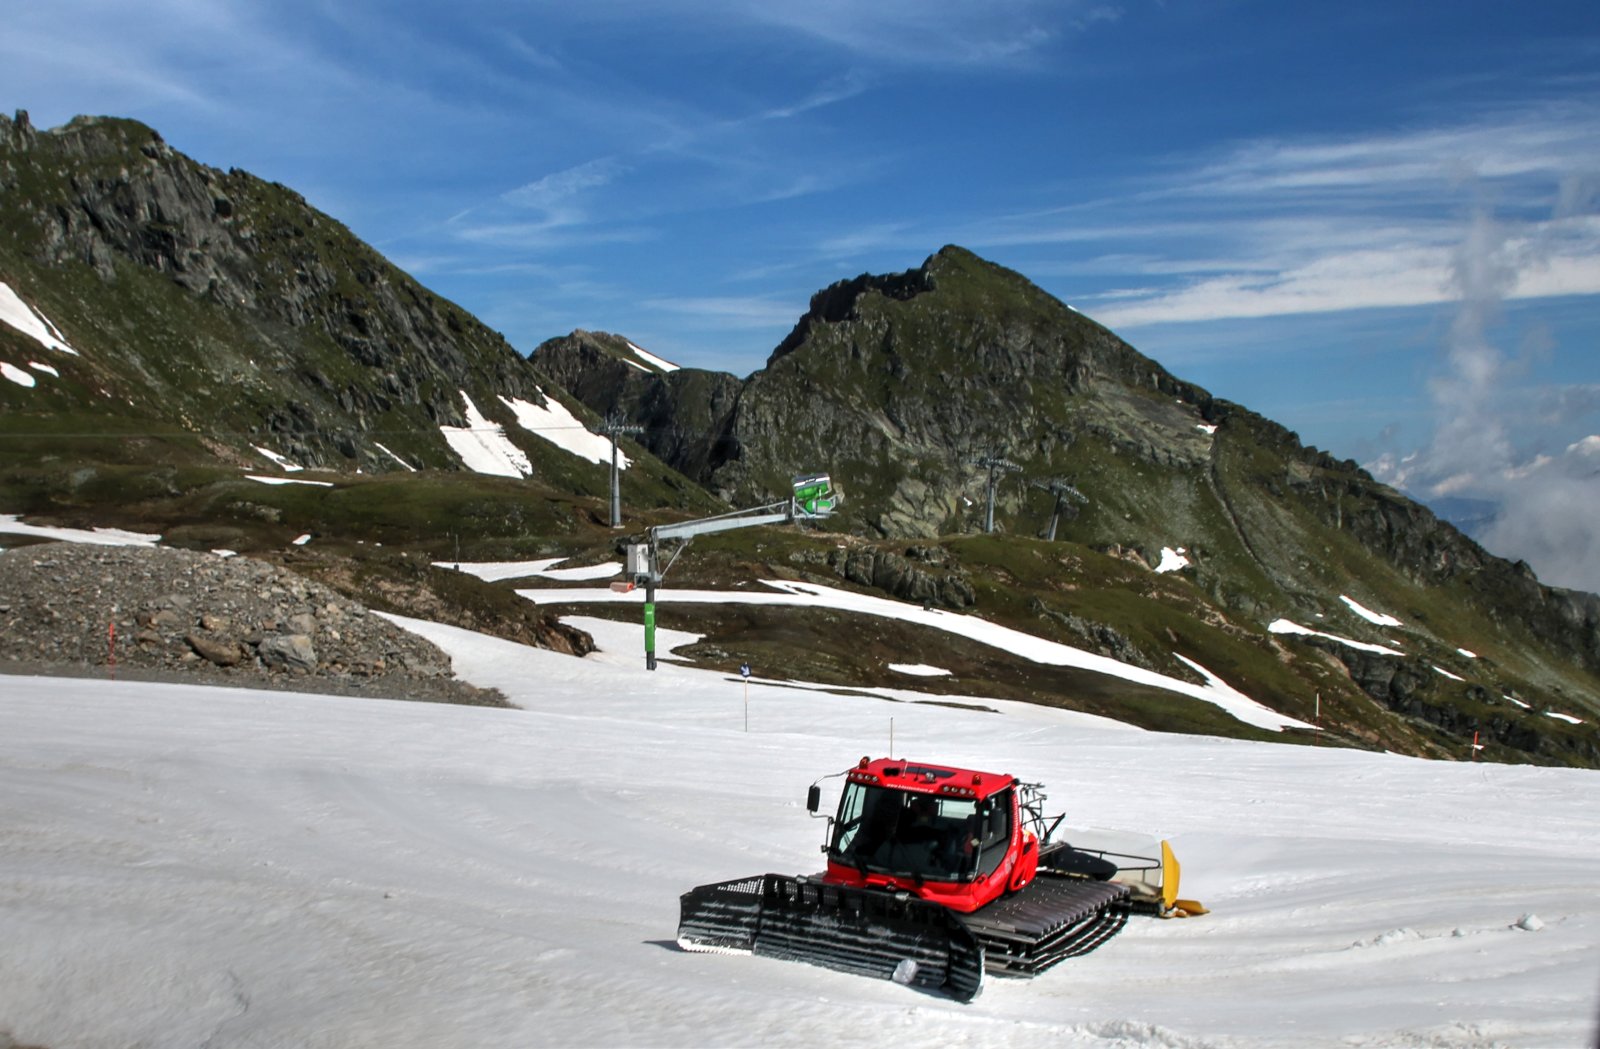 Magányos ratrak az Alpincenter pálya alsó szakaszán